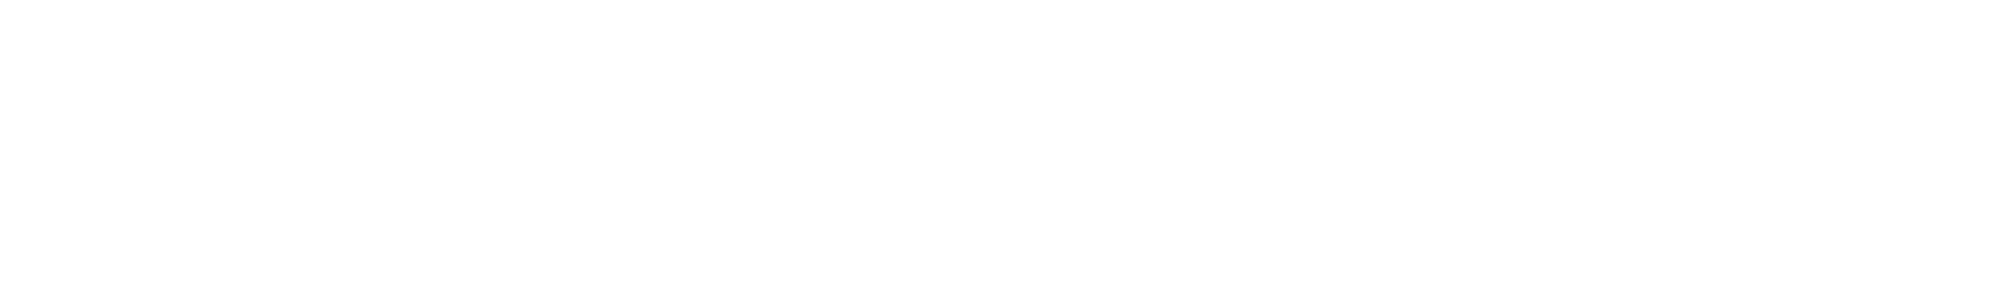 evident logo white